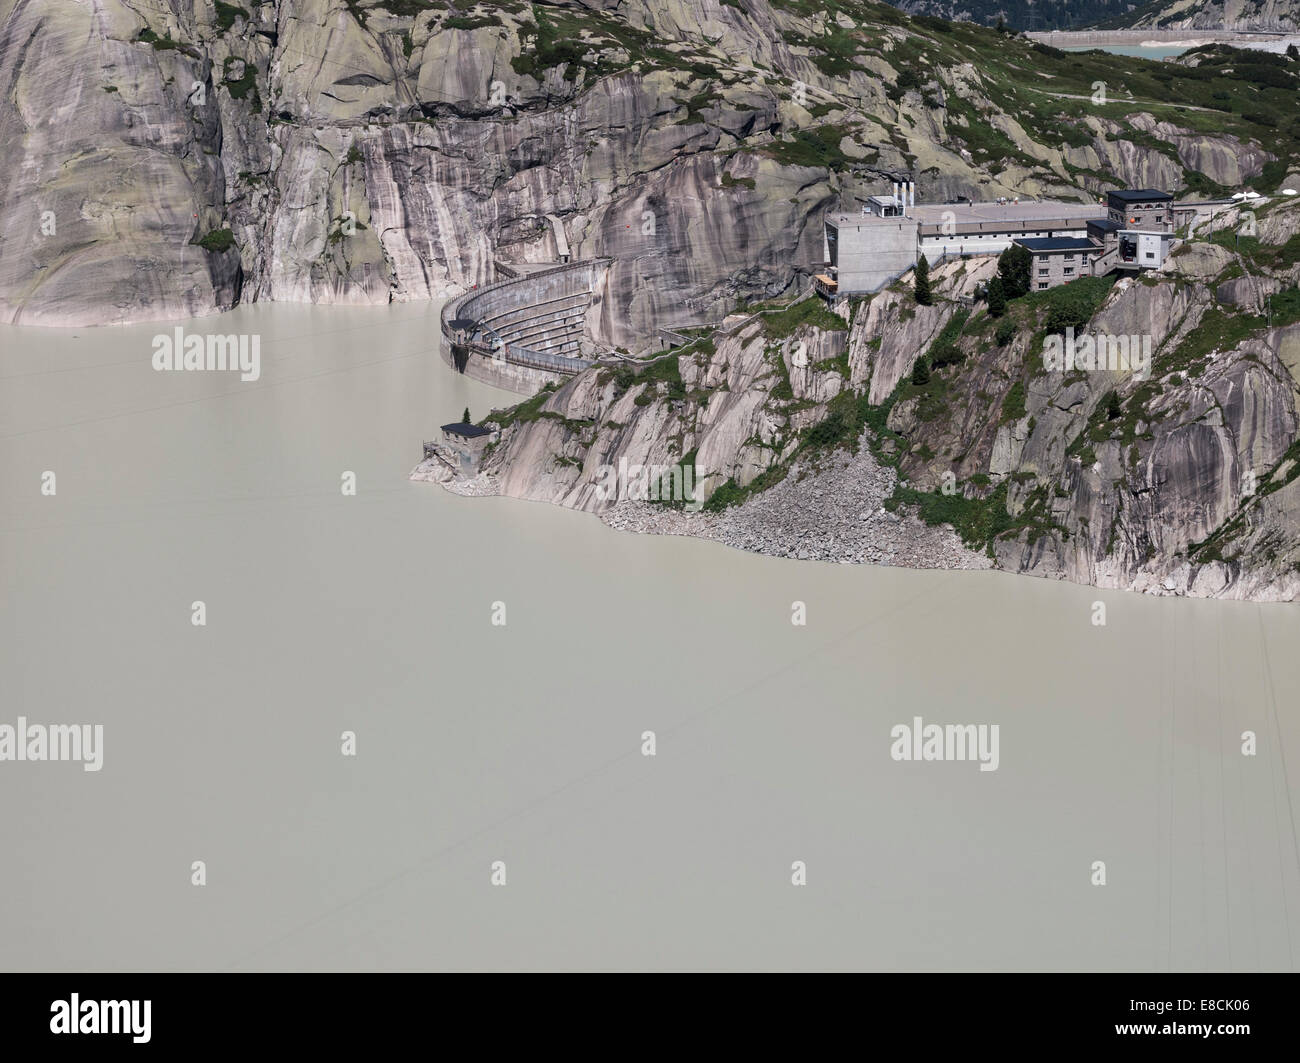 Lake lac réservoir du Grimsel, barrage et utilitaires du Grimsel centrale hydroélectrique, la Suisse, le 1 août, 2013. Banque D'Images